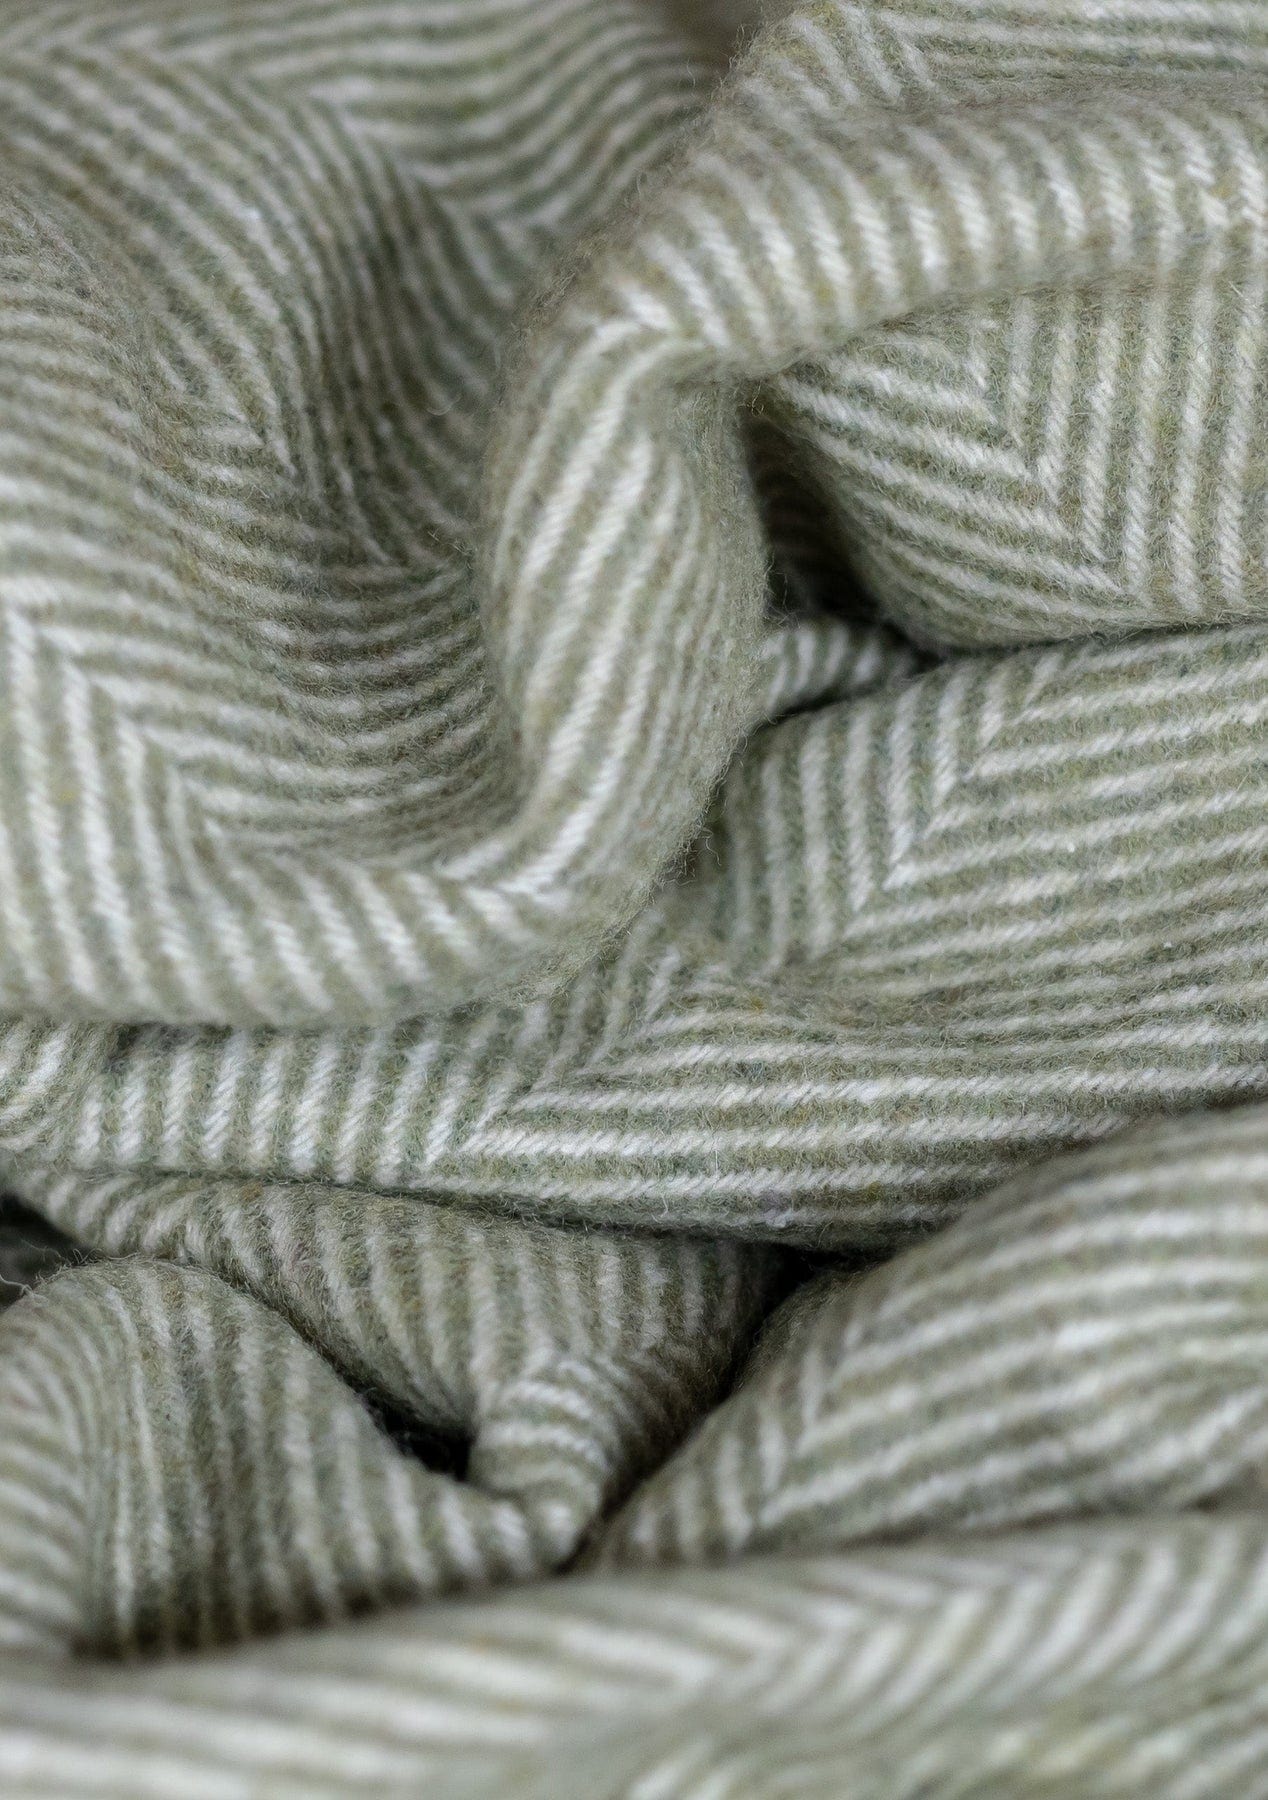 PRIOR SHOP Blankets Olive Herringbone Recycled Wool Blanket